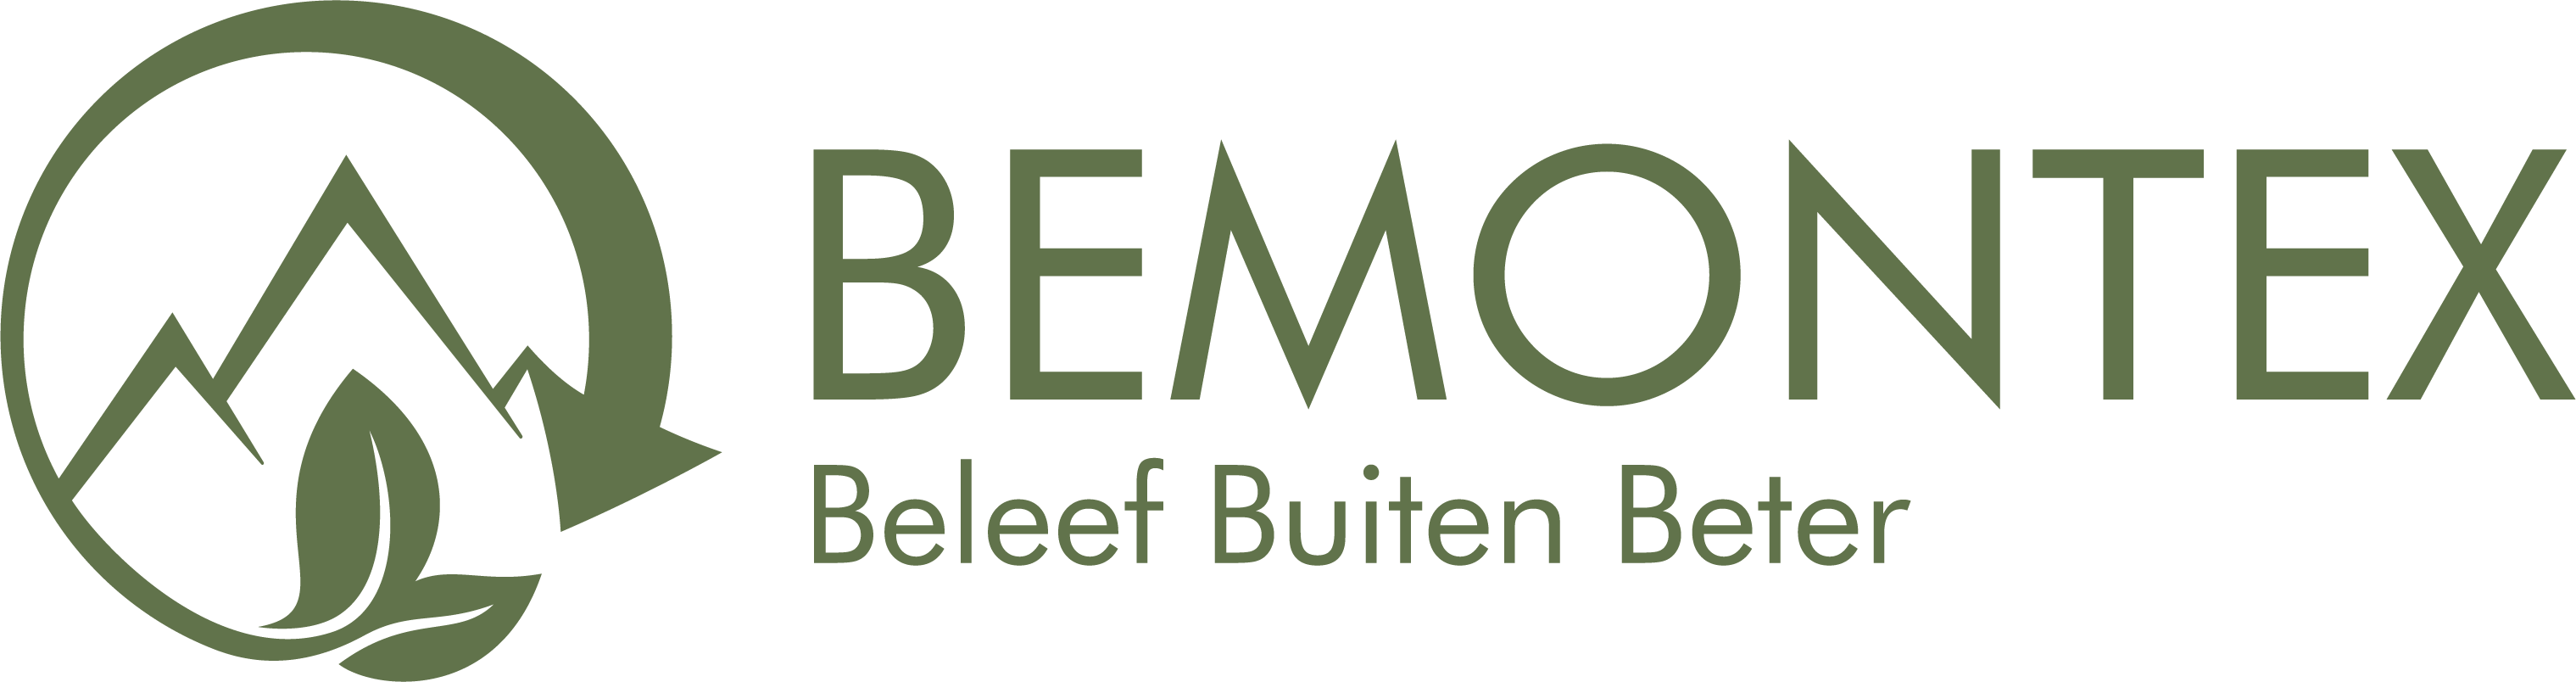 Bemontex logo